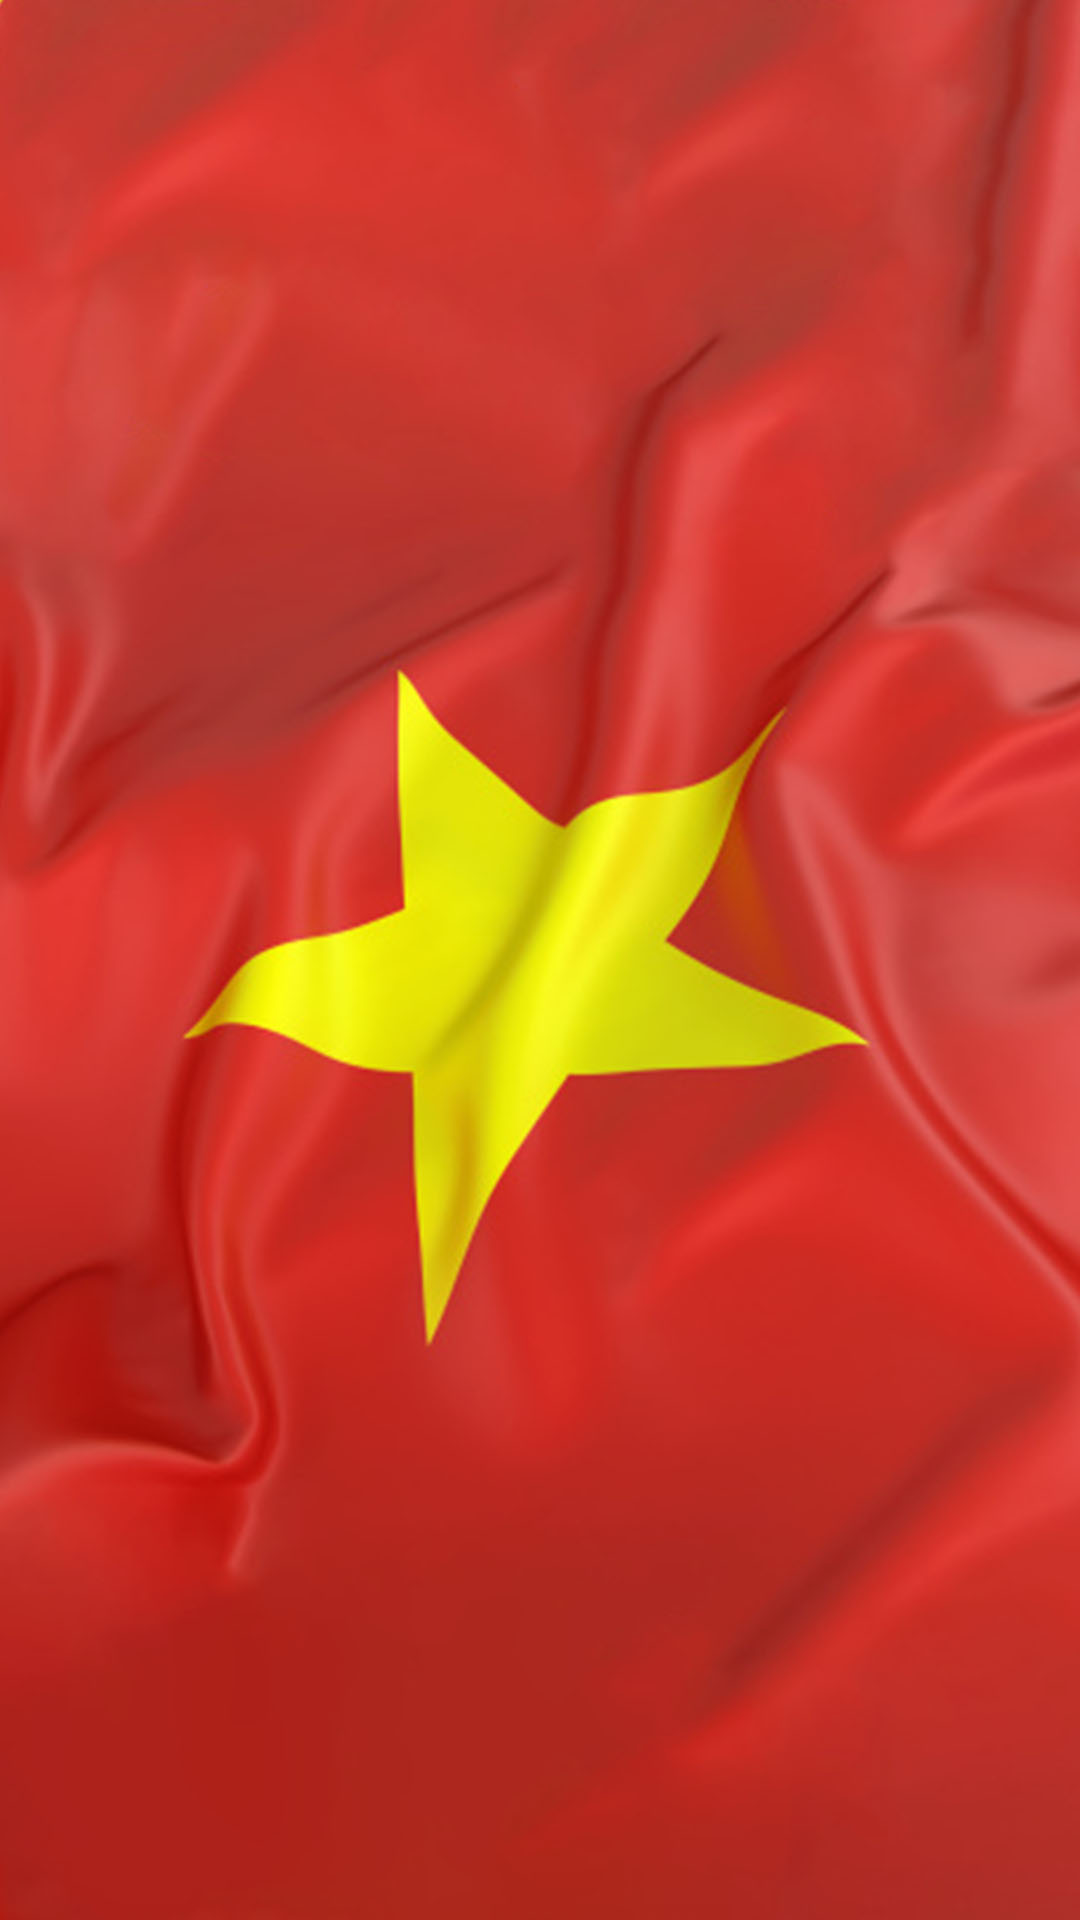 Hình Nền Cờ Việt Nam sẽ mang lại cho bạn cảm giác tự hào và yêu nước hơn bao giờ hết. Với những sắc đỏ sao vàng chói lọi trên nền xanh truyền thống, cờ Việt Nam đã trở thành biểu tượng của lòng quốc dân đoàn kết cùng sự phát triển của đất nước. Hãy dành chút thời gian để ngắm nhìn và cảm nhận sức mạnh của tinh thần quốc gia.